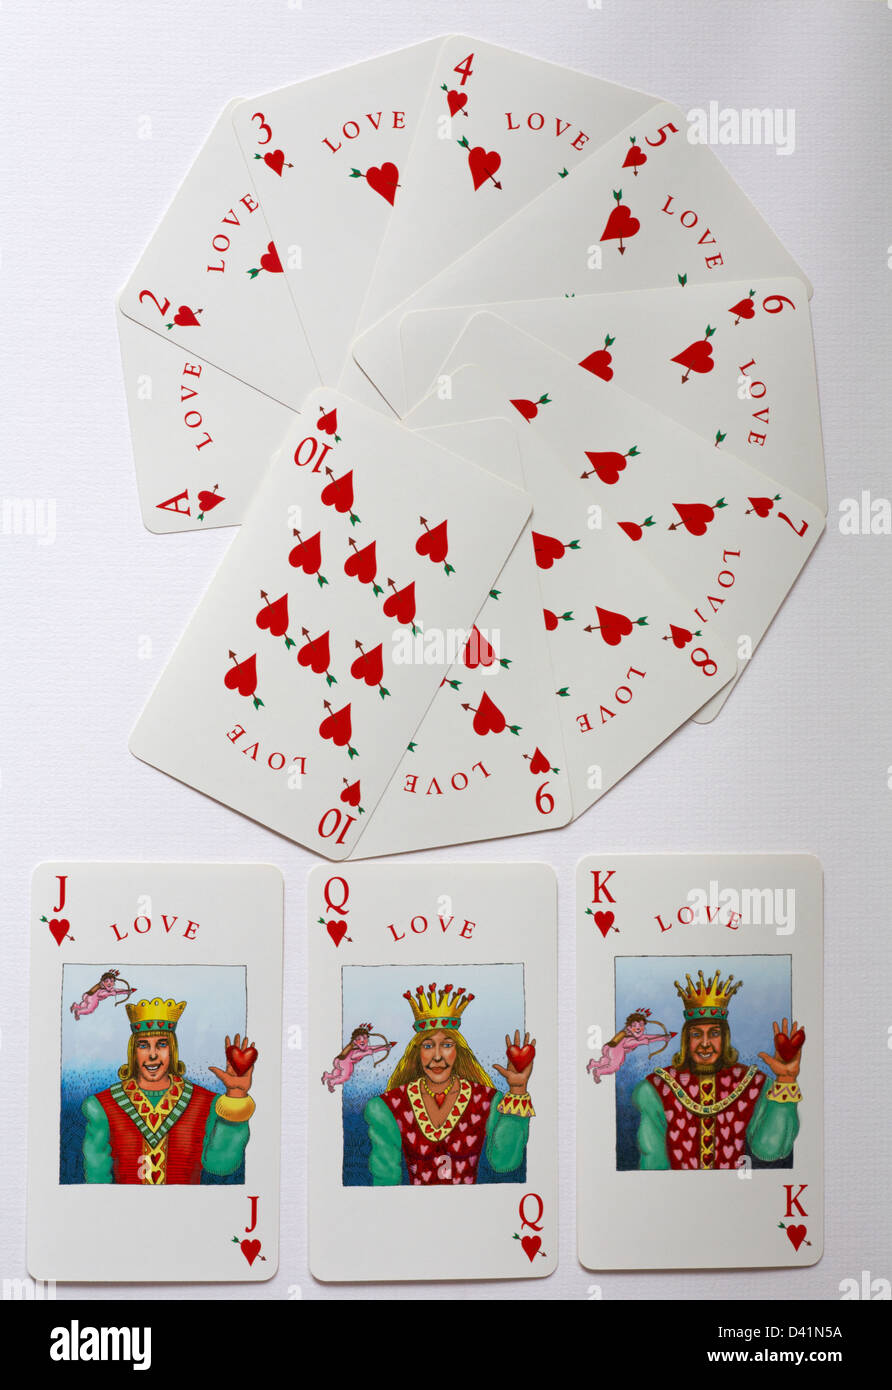 Nouveauté cartes à jouer montrant Love Hearts suit isolé sur fond blanc - jeu de cartes de GUERRE politiquement correct non-violent - Royaume-Uni Banque D'Images